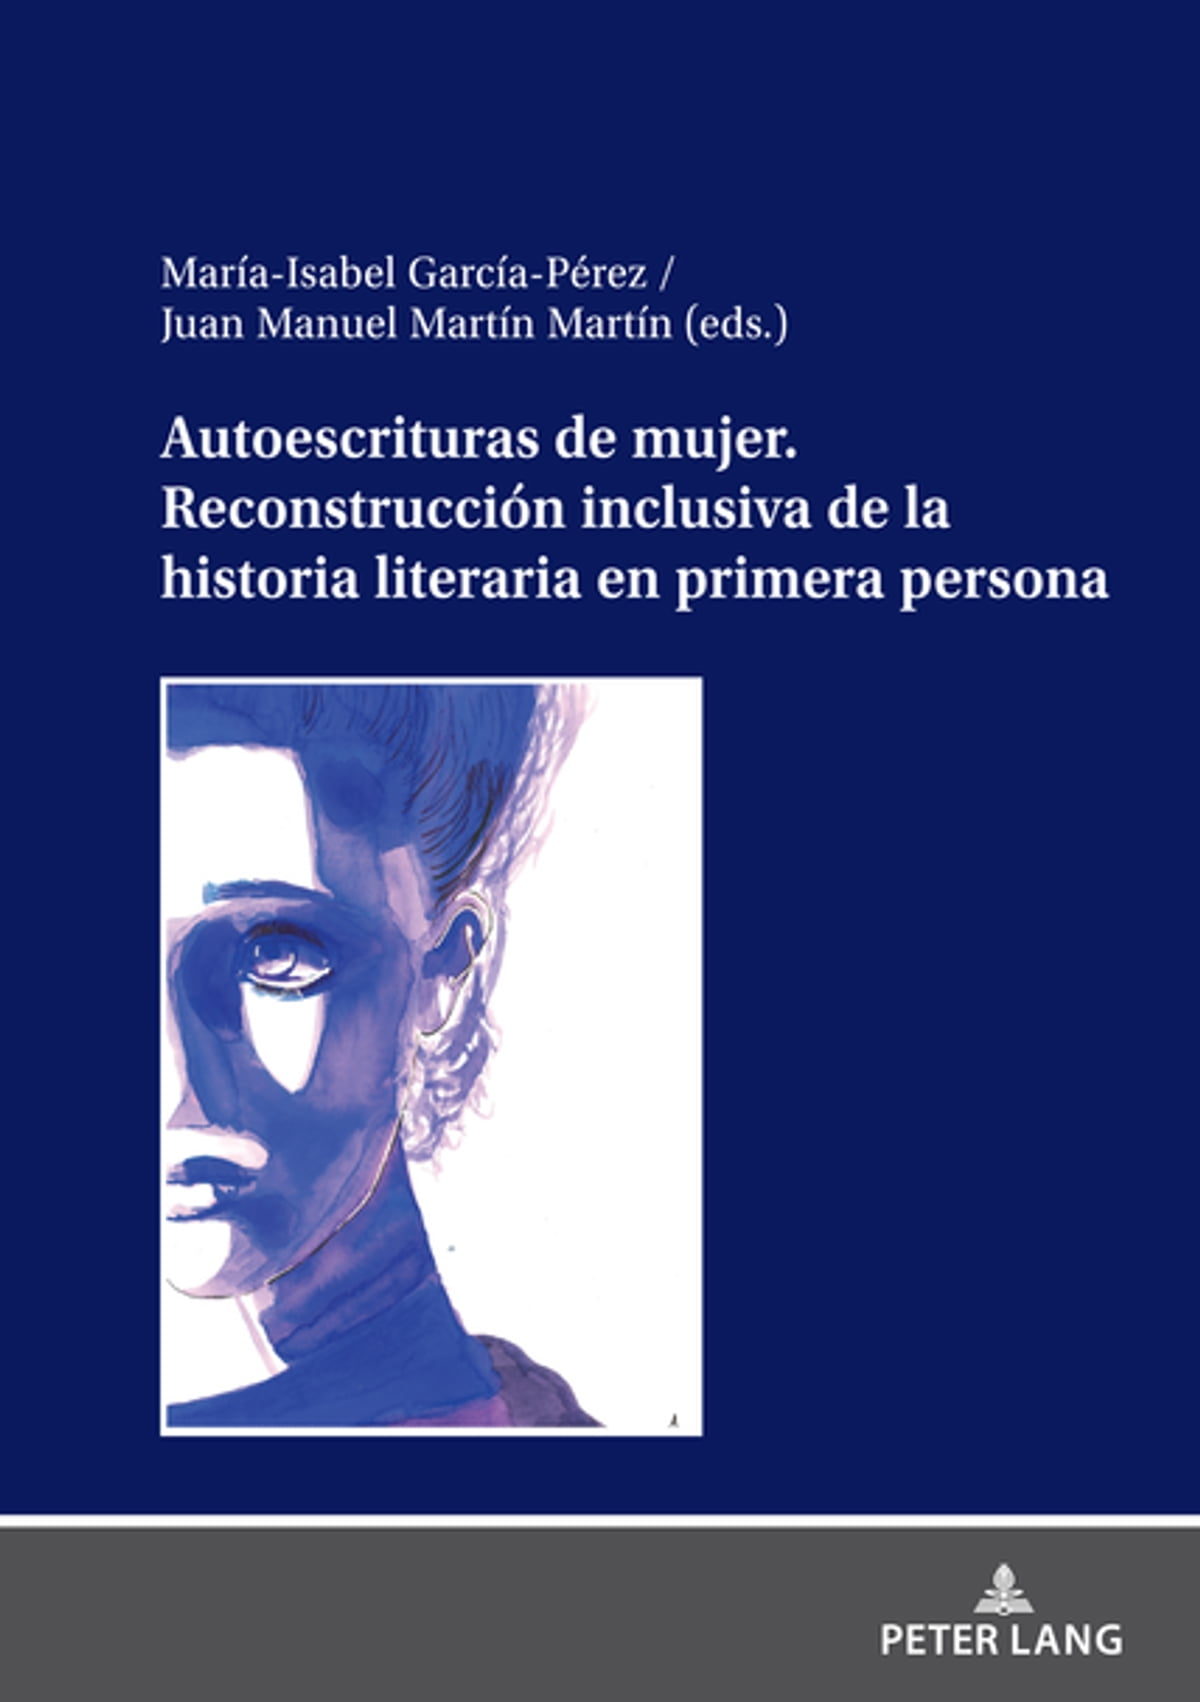 Imagen de portada del libro Autoescrituras de mujer